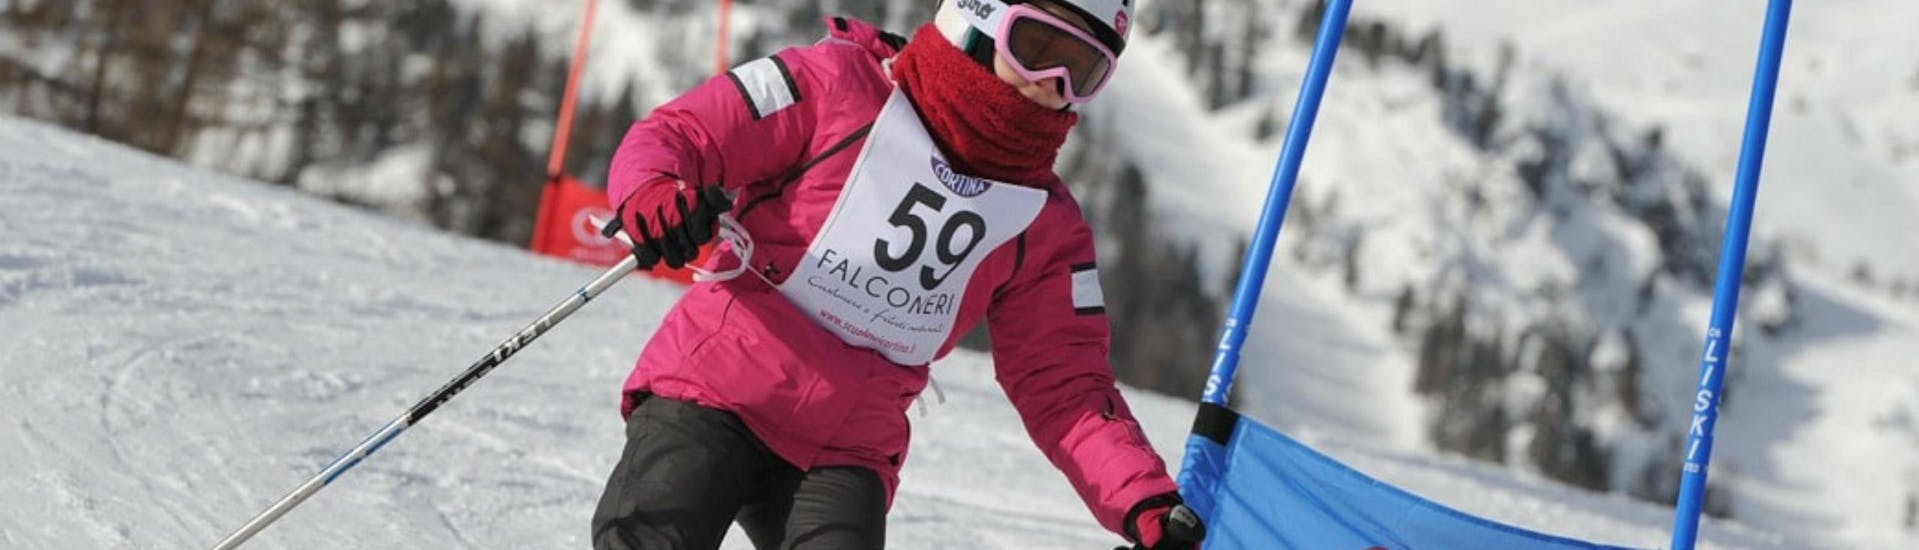 Les enfants font une course à Cortina pendant l'un des cours de ski pour enfants (6-14 ans) pour skieurs expérimentés - Journée complète.